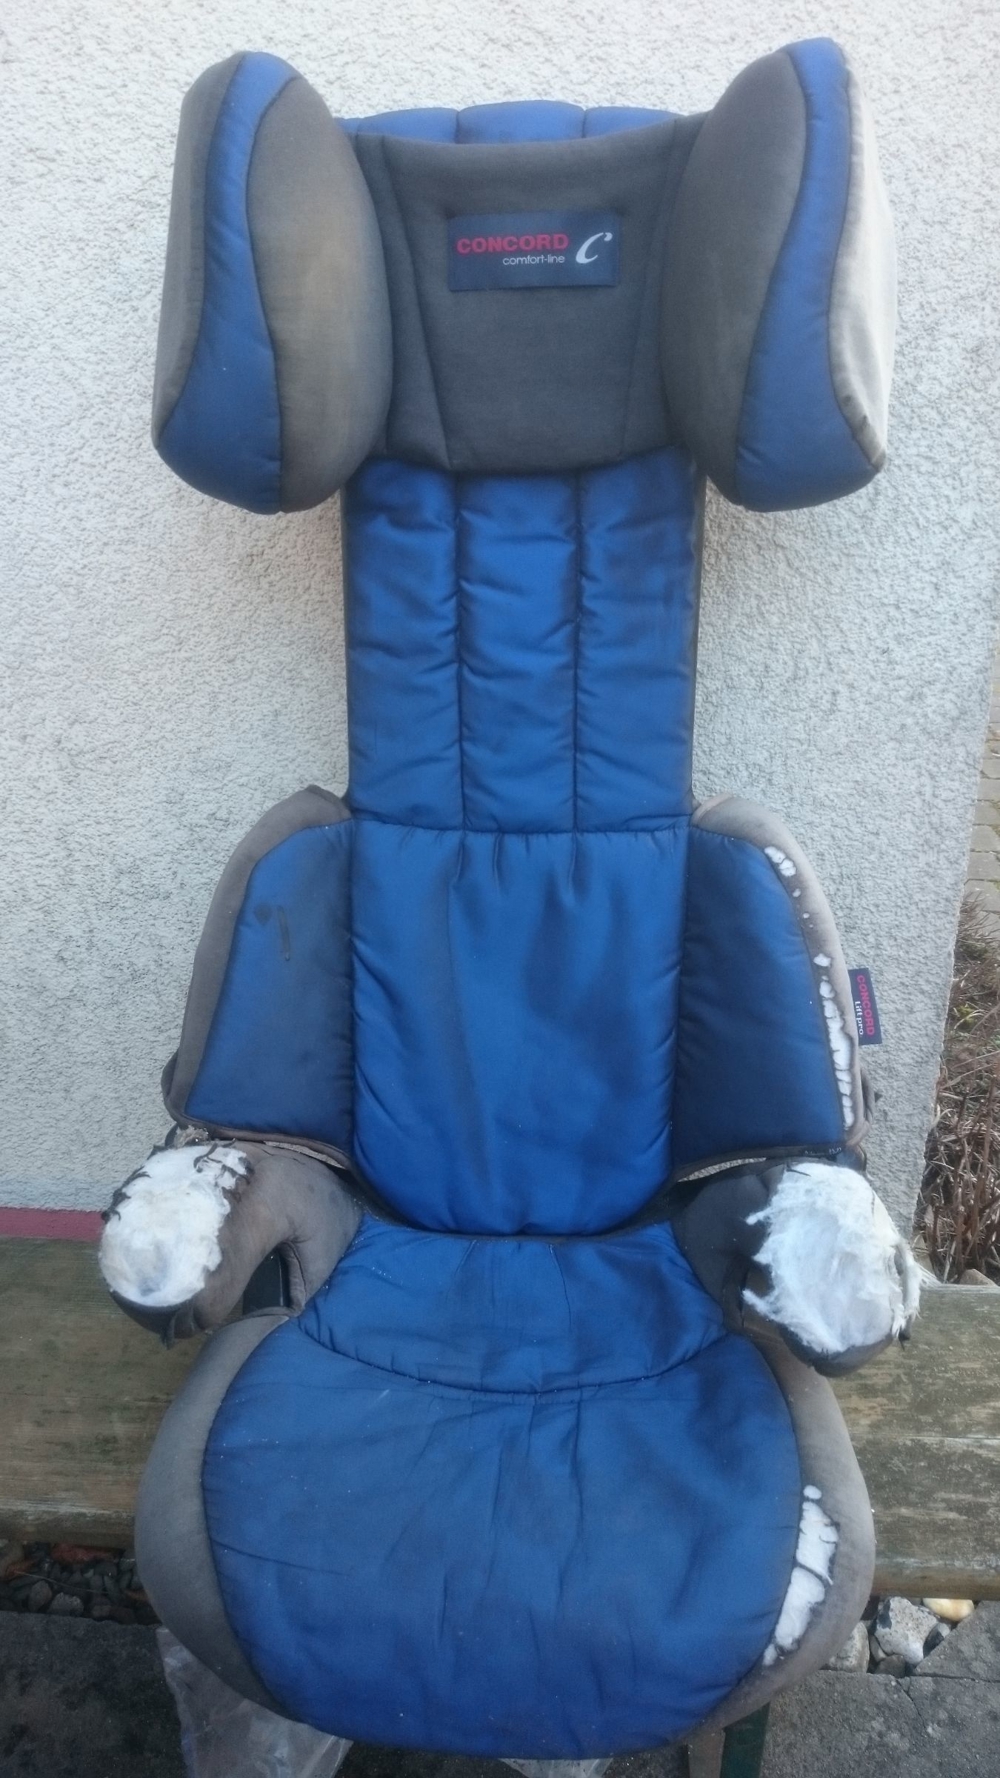 Kindersitz Concord-lift-pro, 3-12 Jahre, 15-36 kg, -150 cm, blau